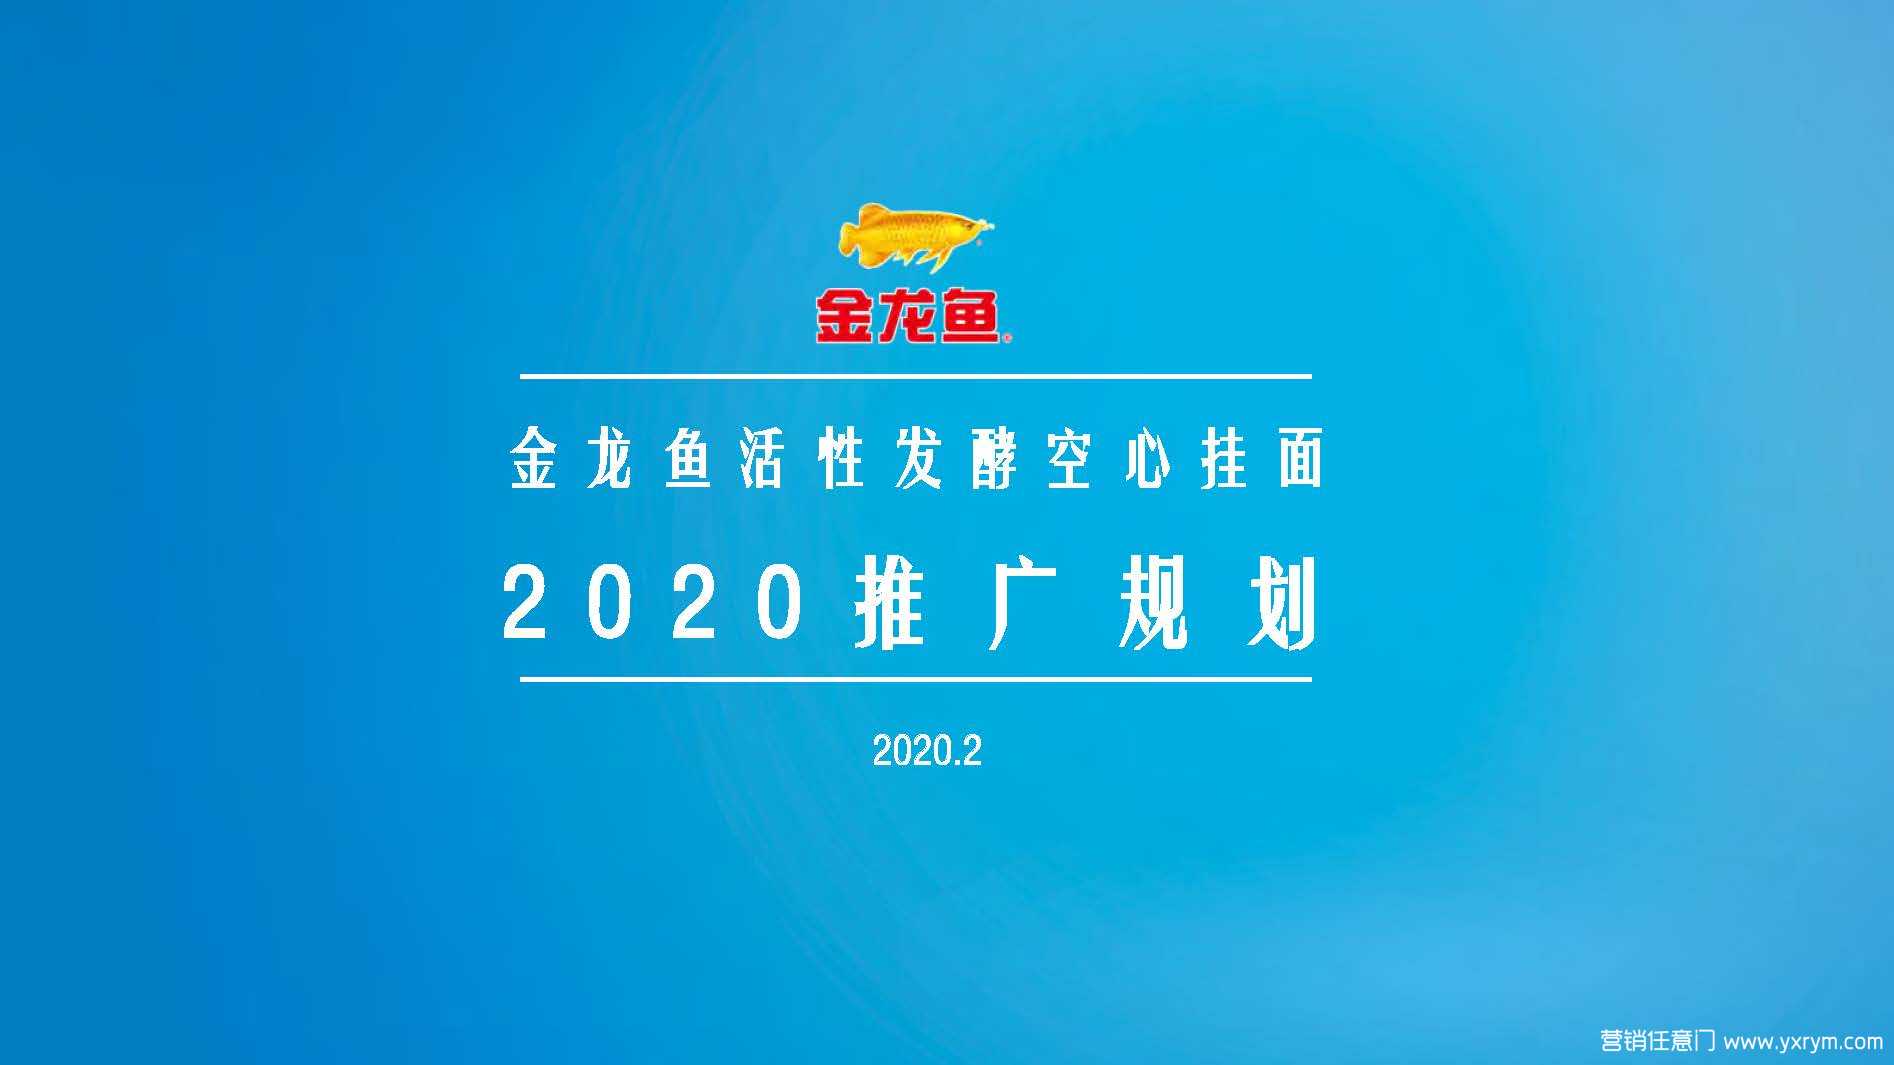 【营销任意门】金龙鱼优＋活性发酵挂面2020年度推广规划00